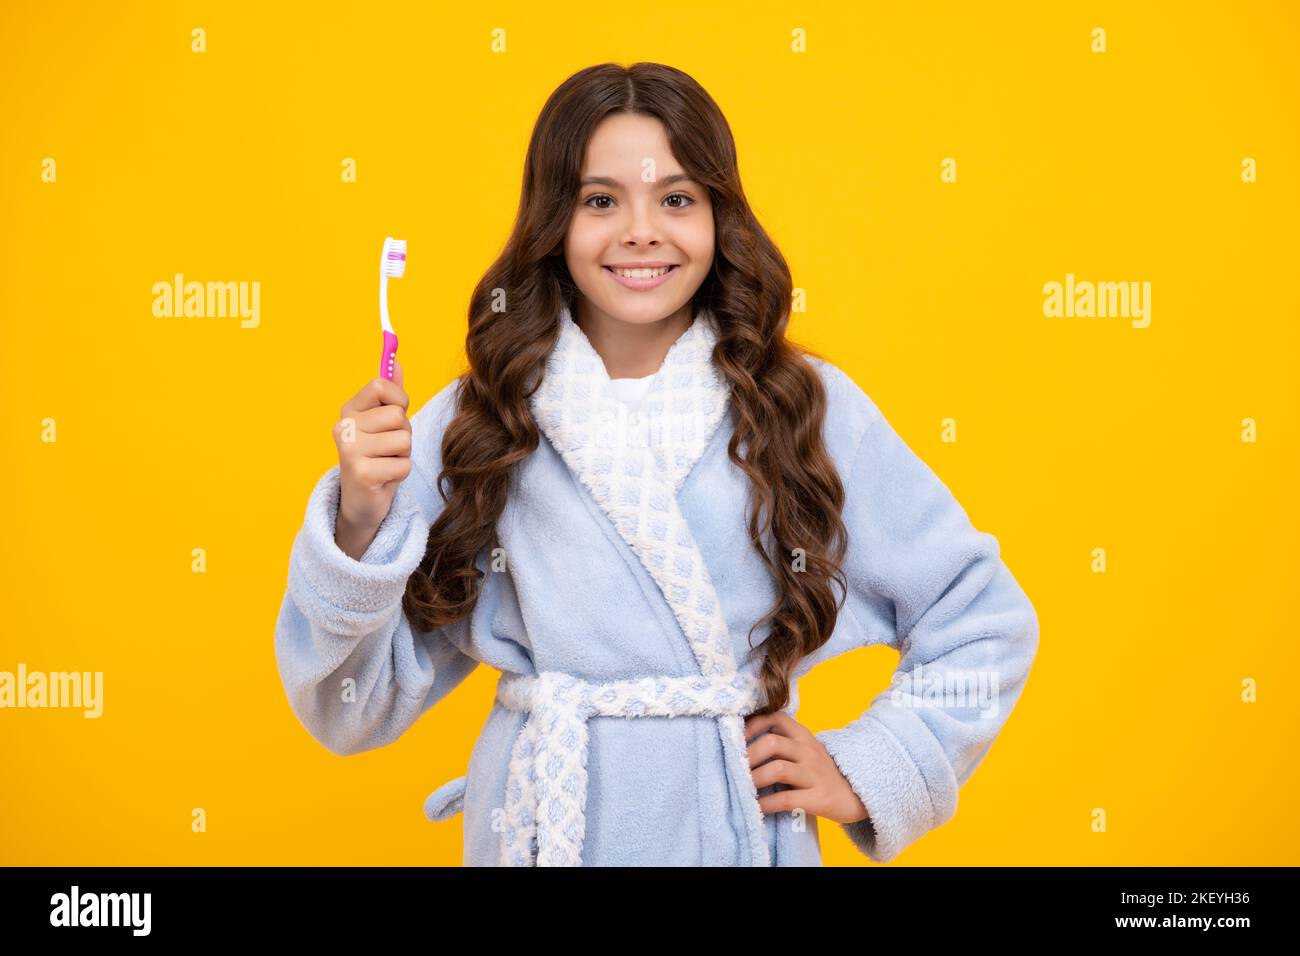 Brossage matinal des dents. Une adolescente se brossant les dents sur un fond jaune isolé. Brosse à dents d'hygiène quotidienne pour adolescents, routine du matin Banque D'Images